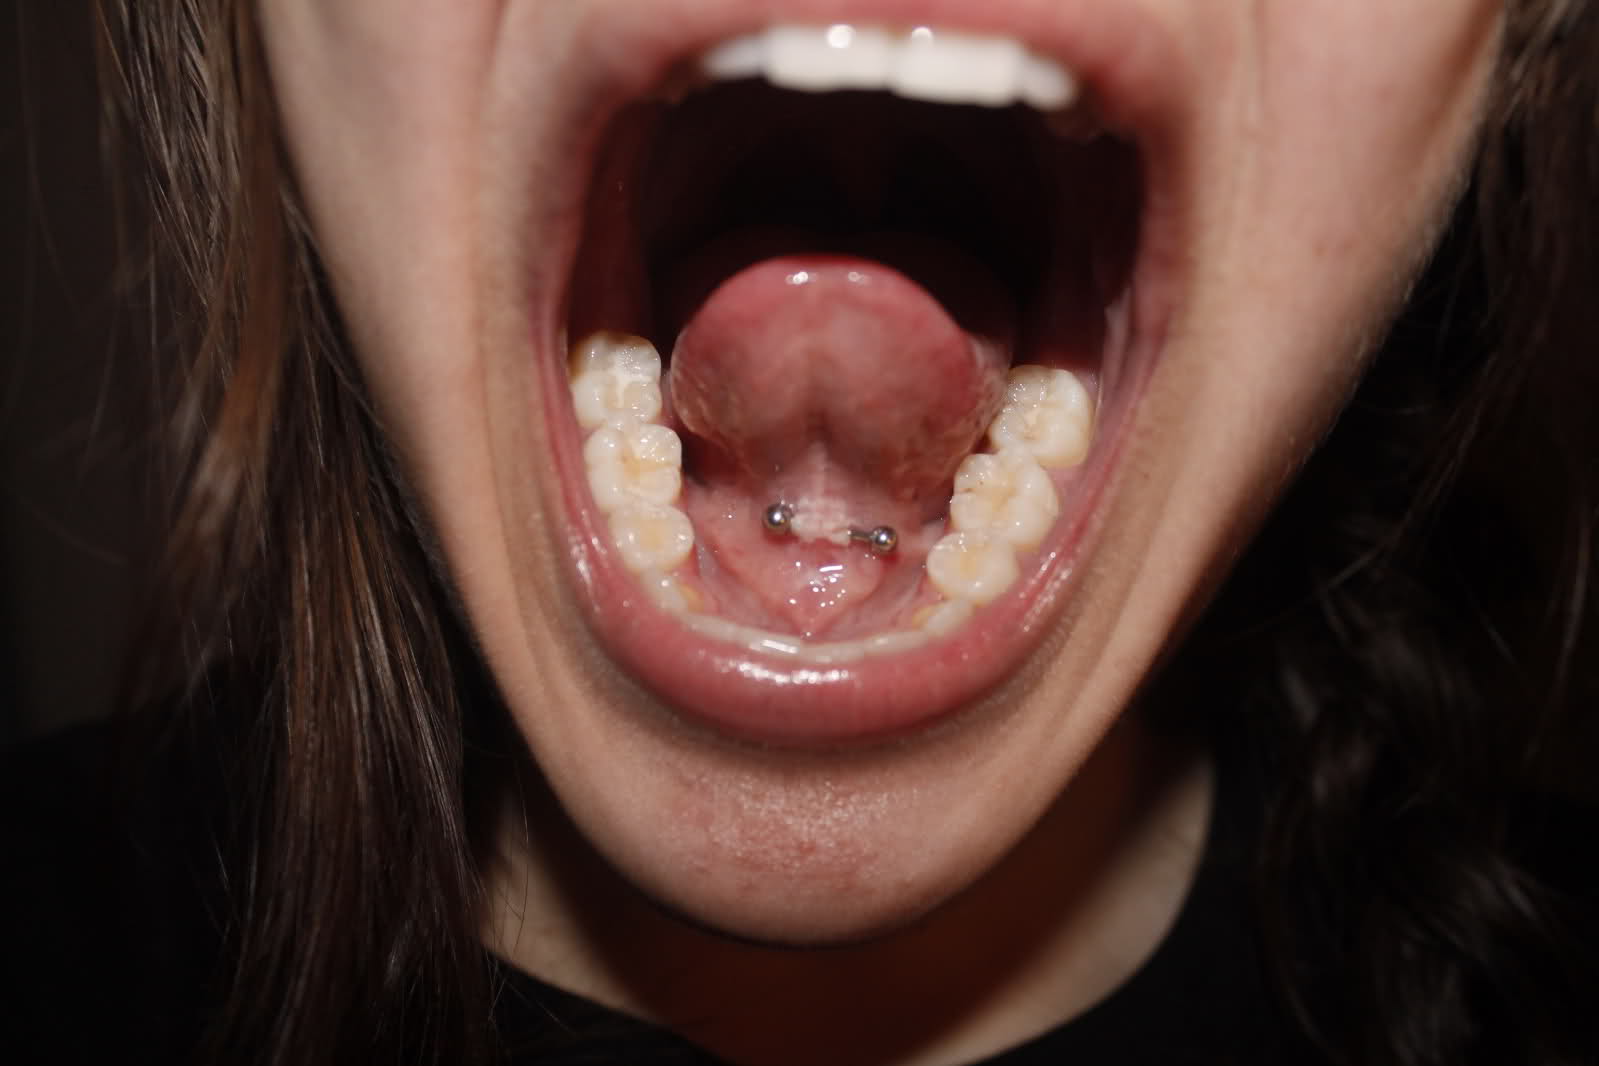 Frenelum Tongue